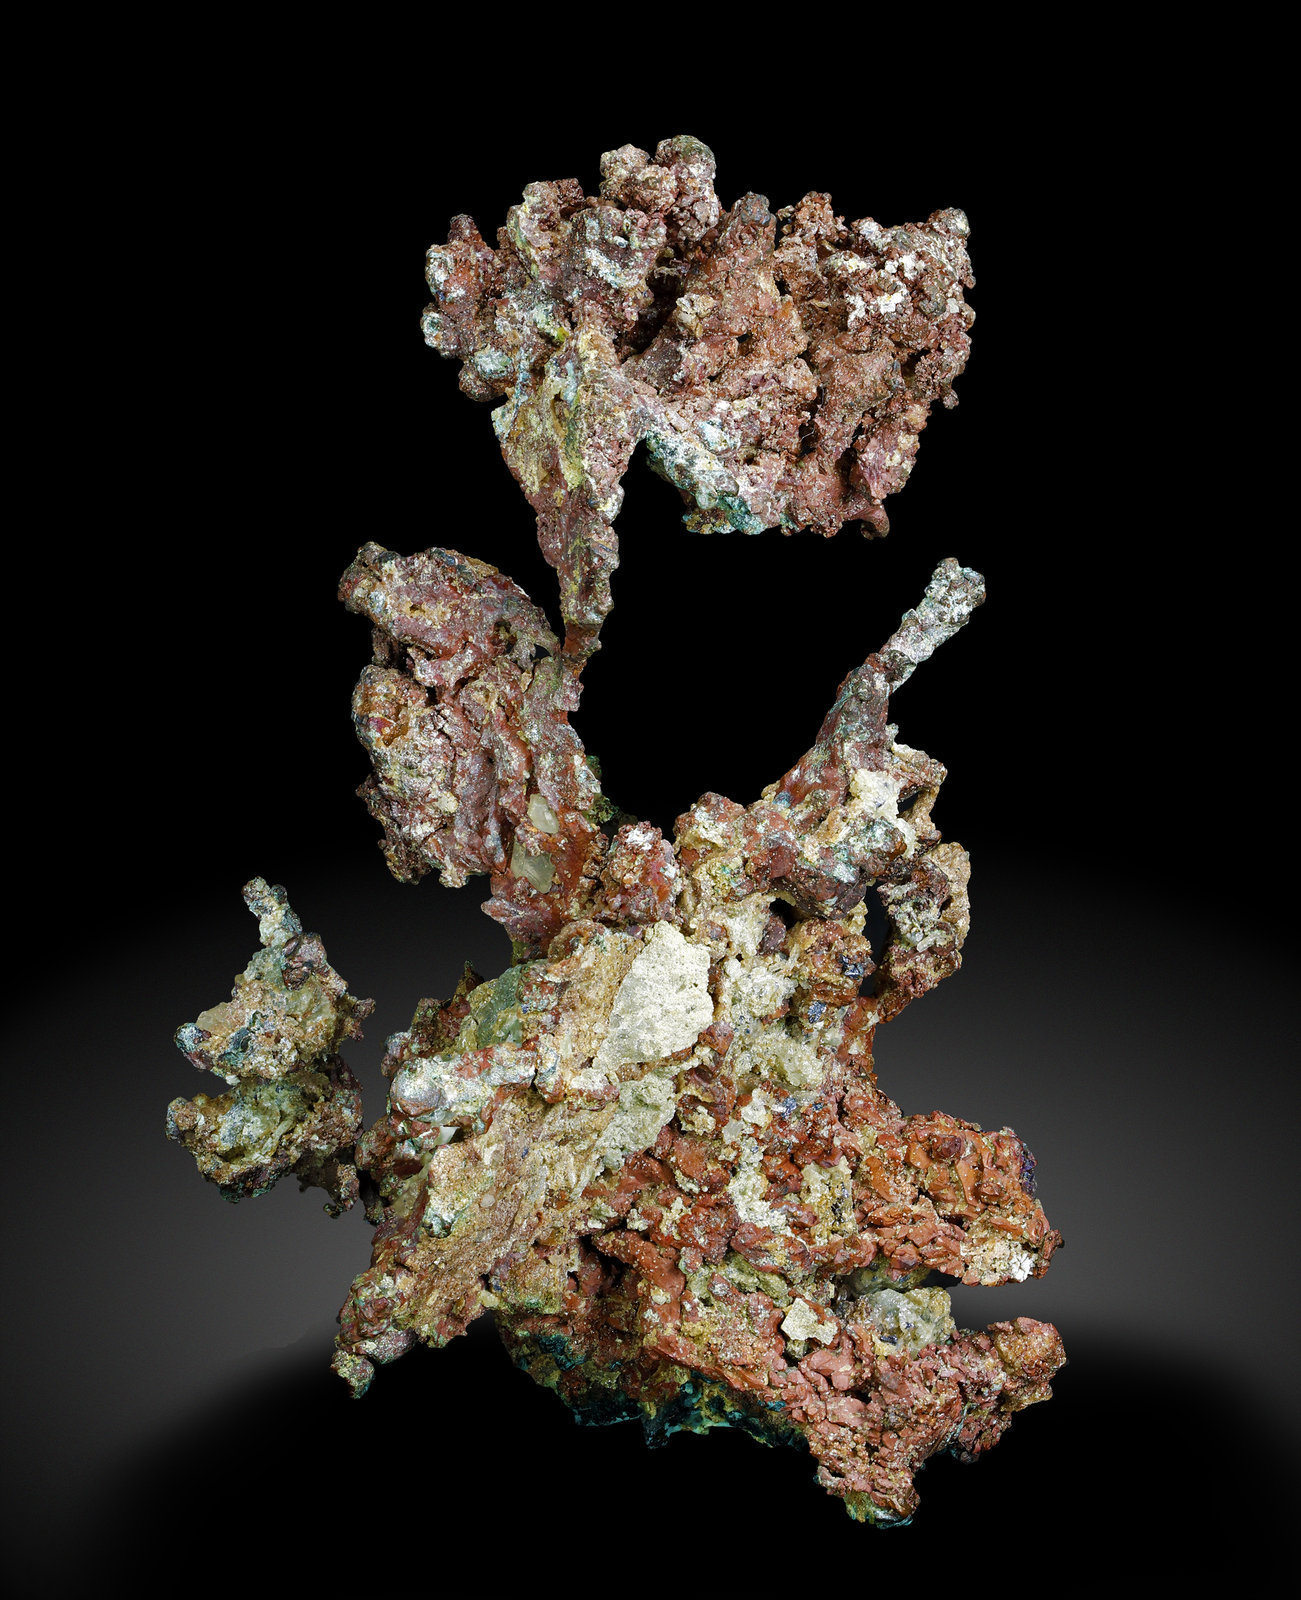 specimens/s_imagesAJ6/Copper-MV37AJ6r.jpg